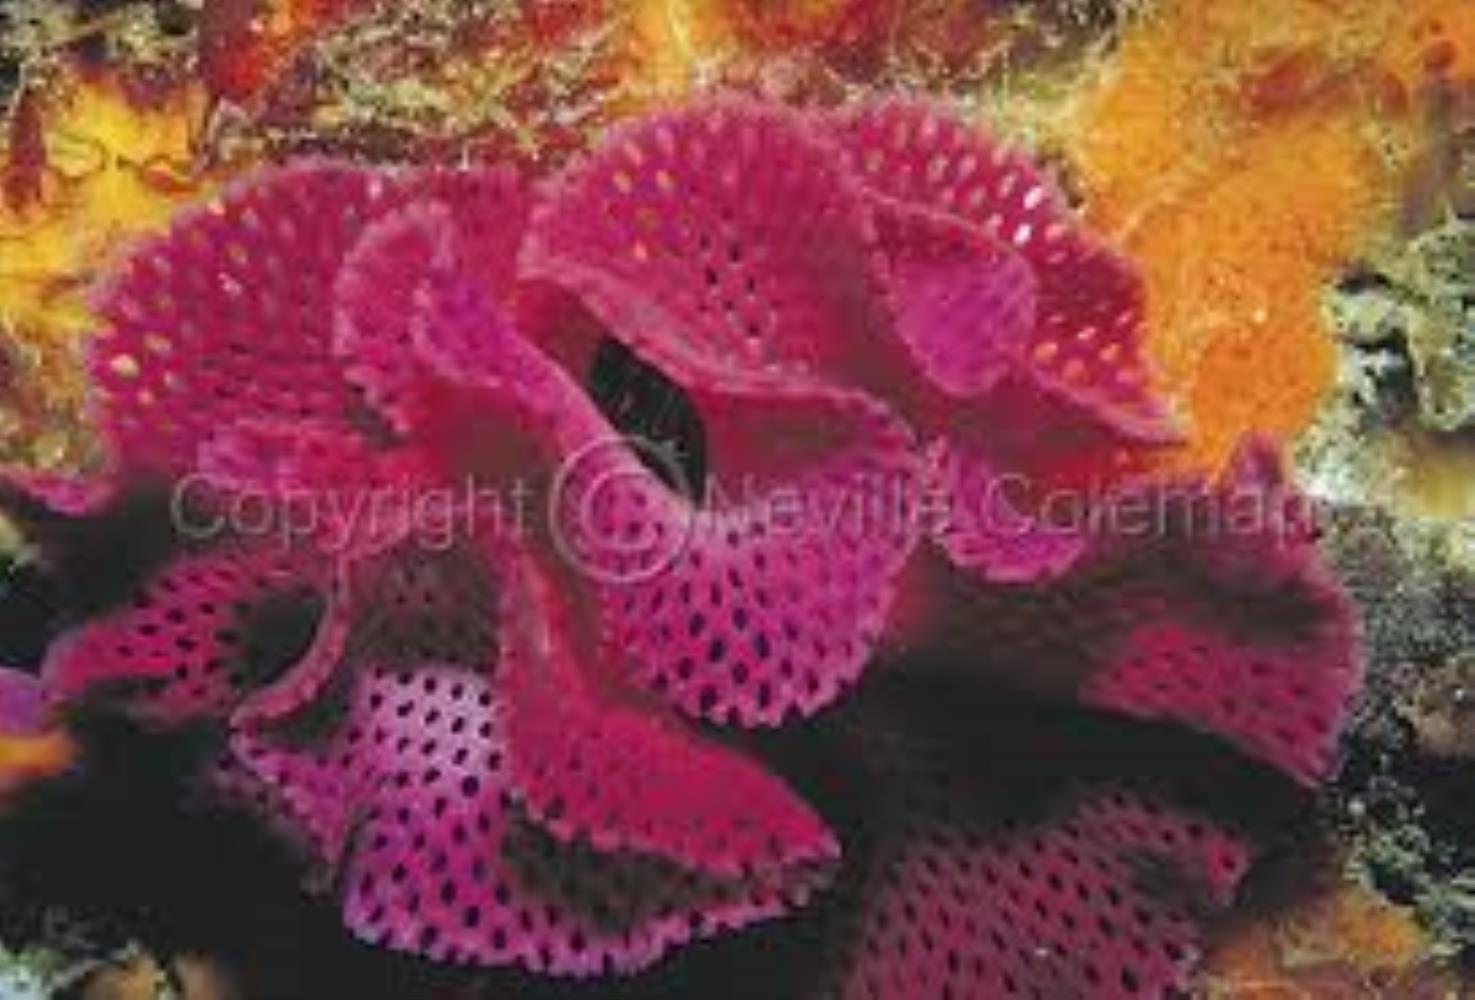 Pink Lace Bryozoan